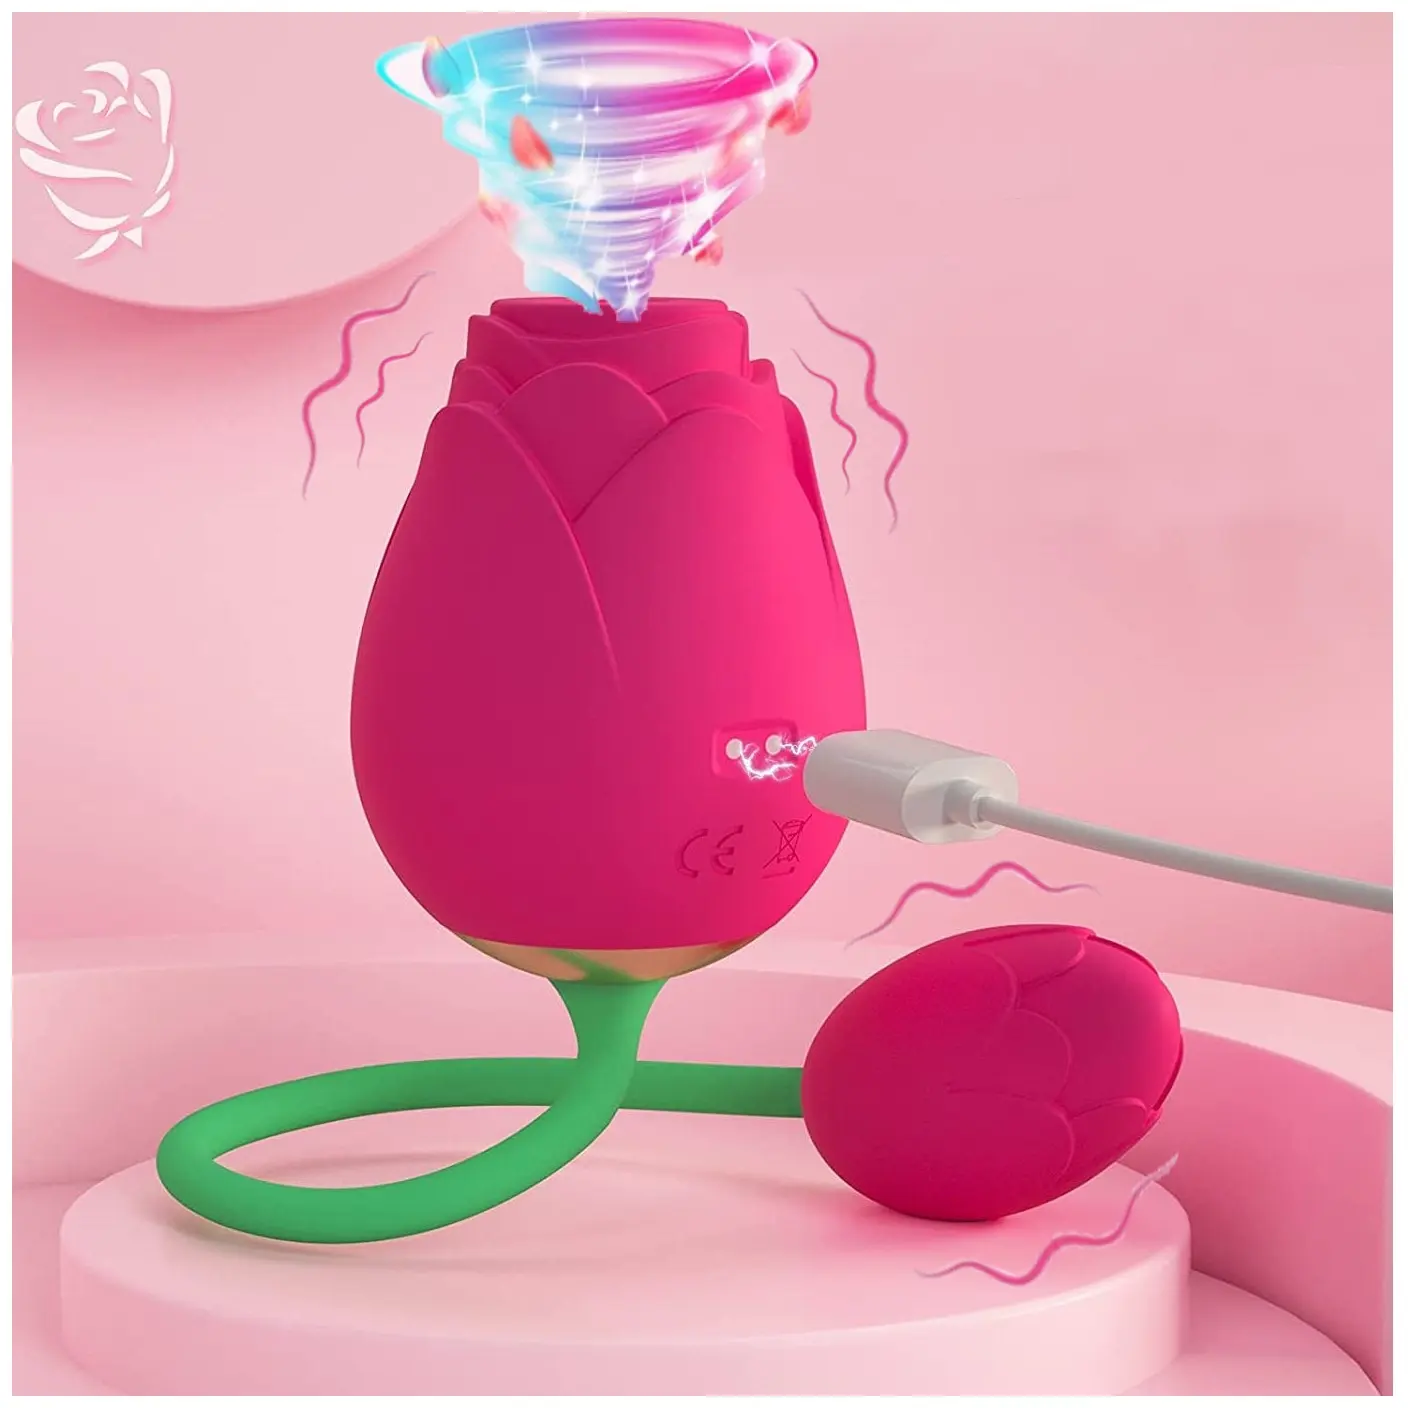 XIAER هزاز لسان مدلك ألعاب جنسية للكبار على شكل 2 في 1 للأزواج الجنس الشرجي على شكل بيضة متجر لعبة جنسية هزاز على شكل وردة